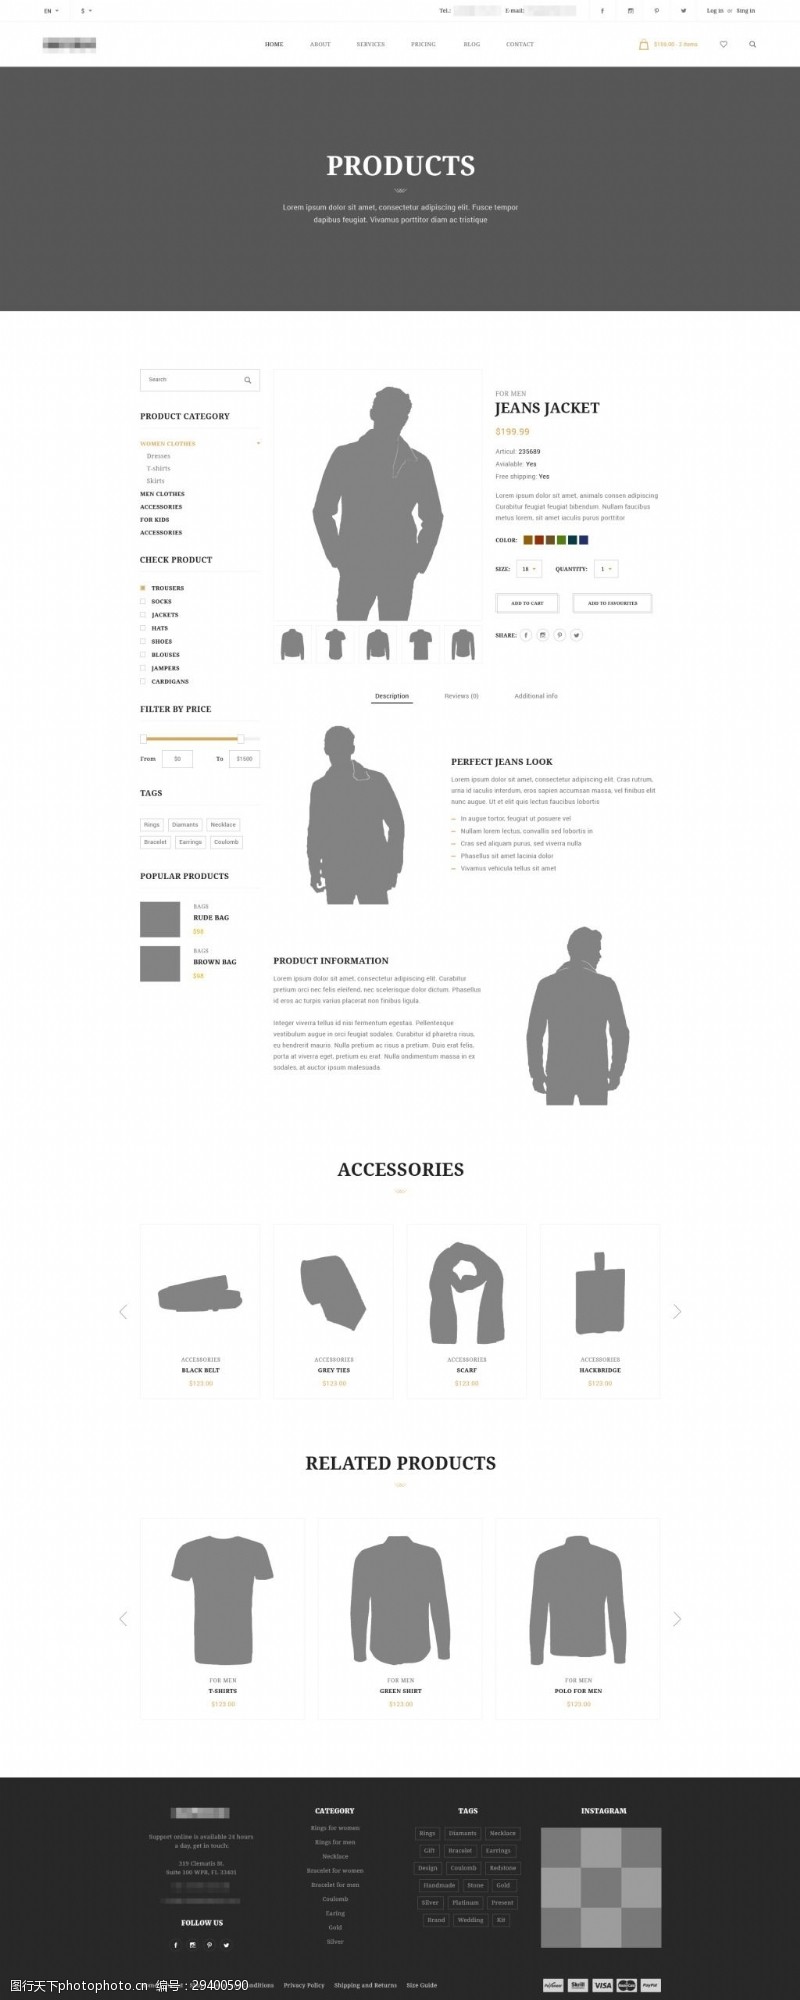 产品概述企业在线服装购物商城网站模板之产品详情